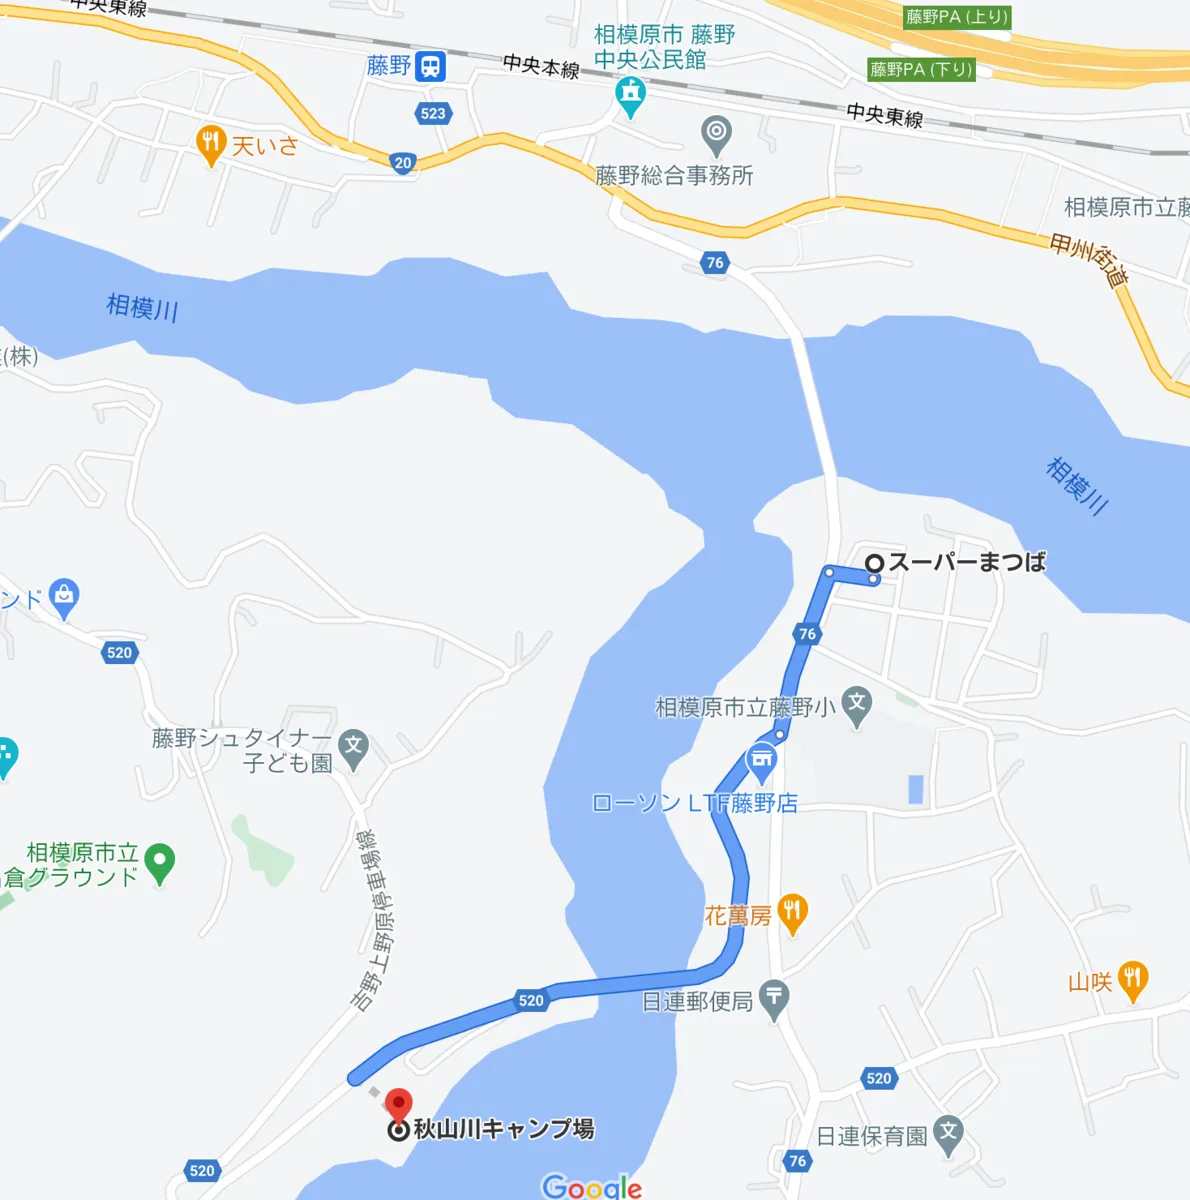 從松葉到秋山川露營地的地圖和路線